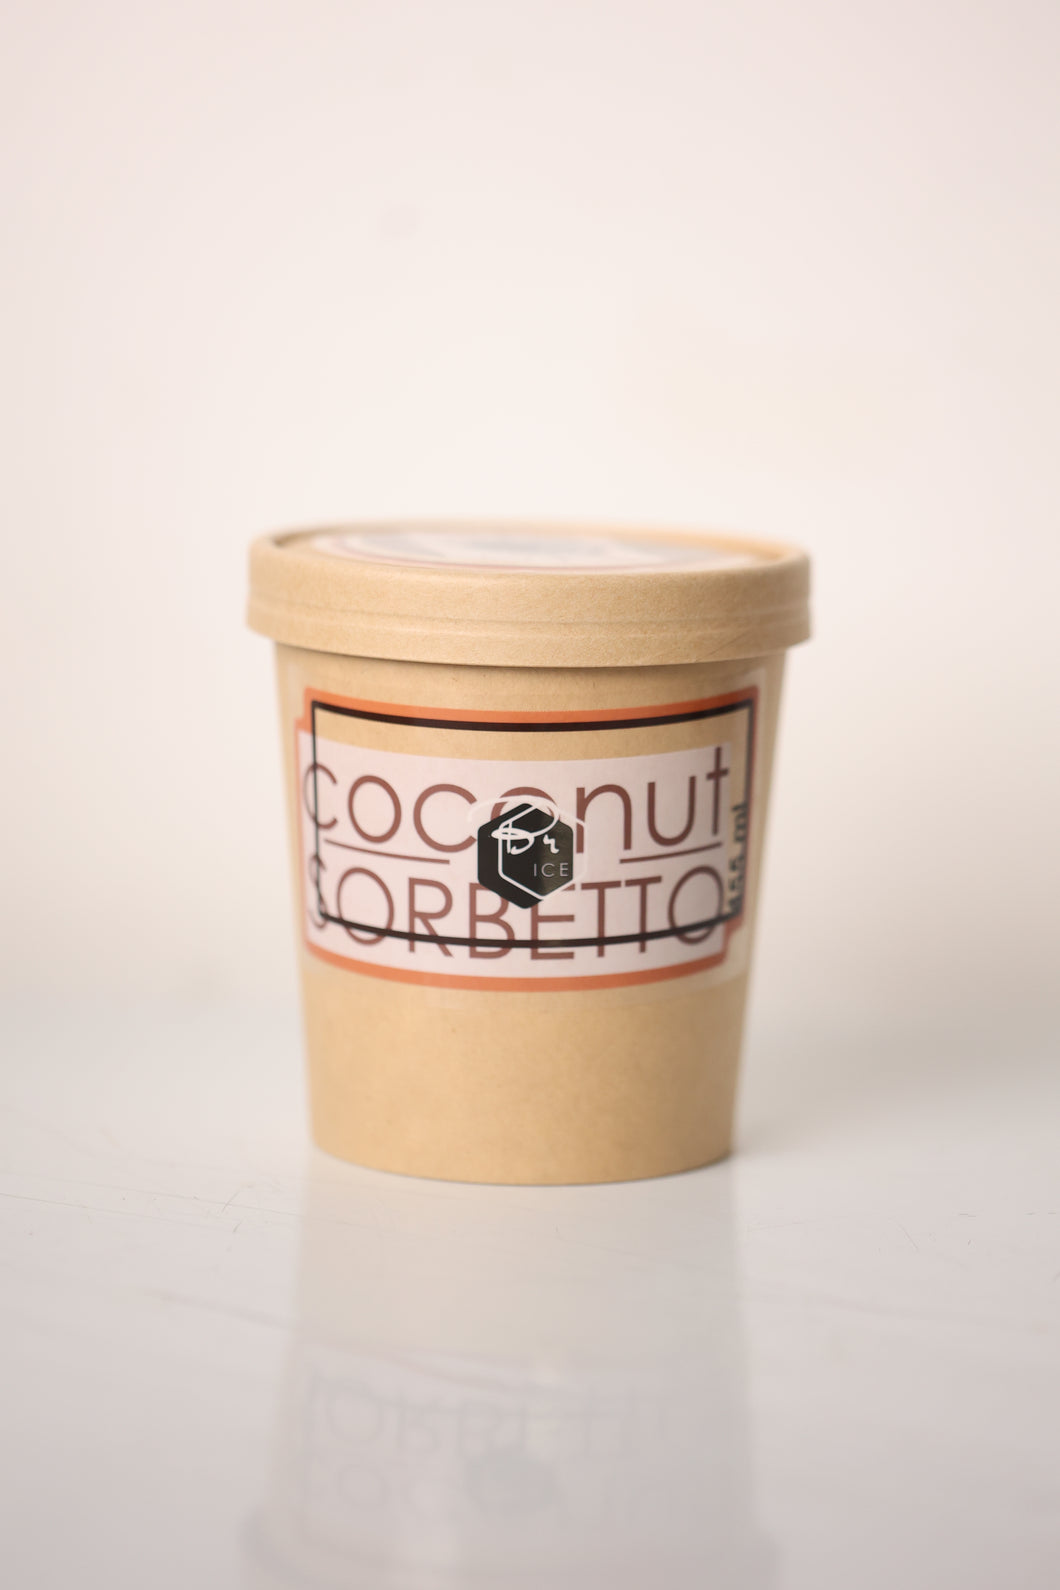 Coconut Sorbetto